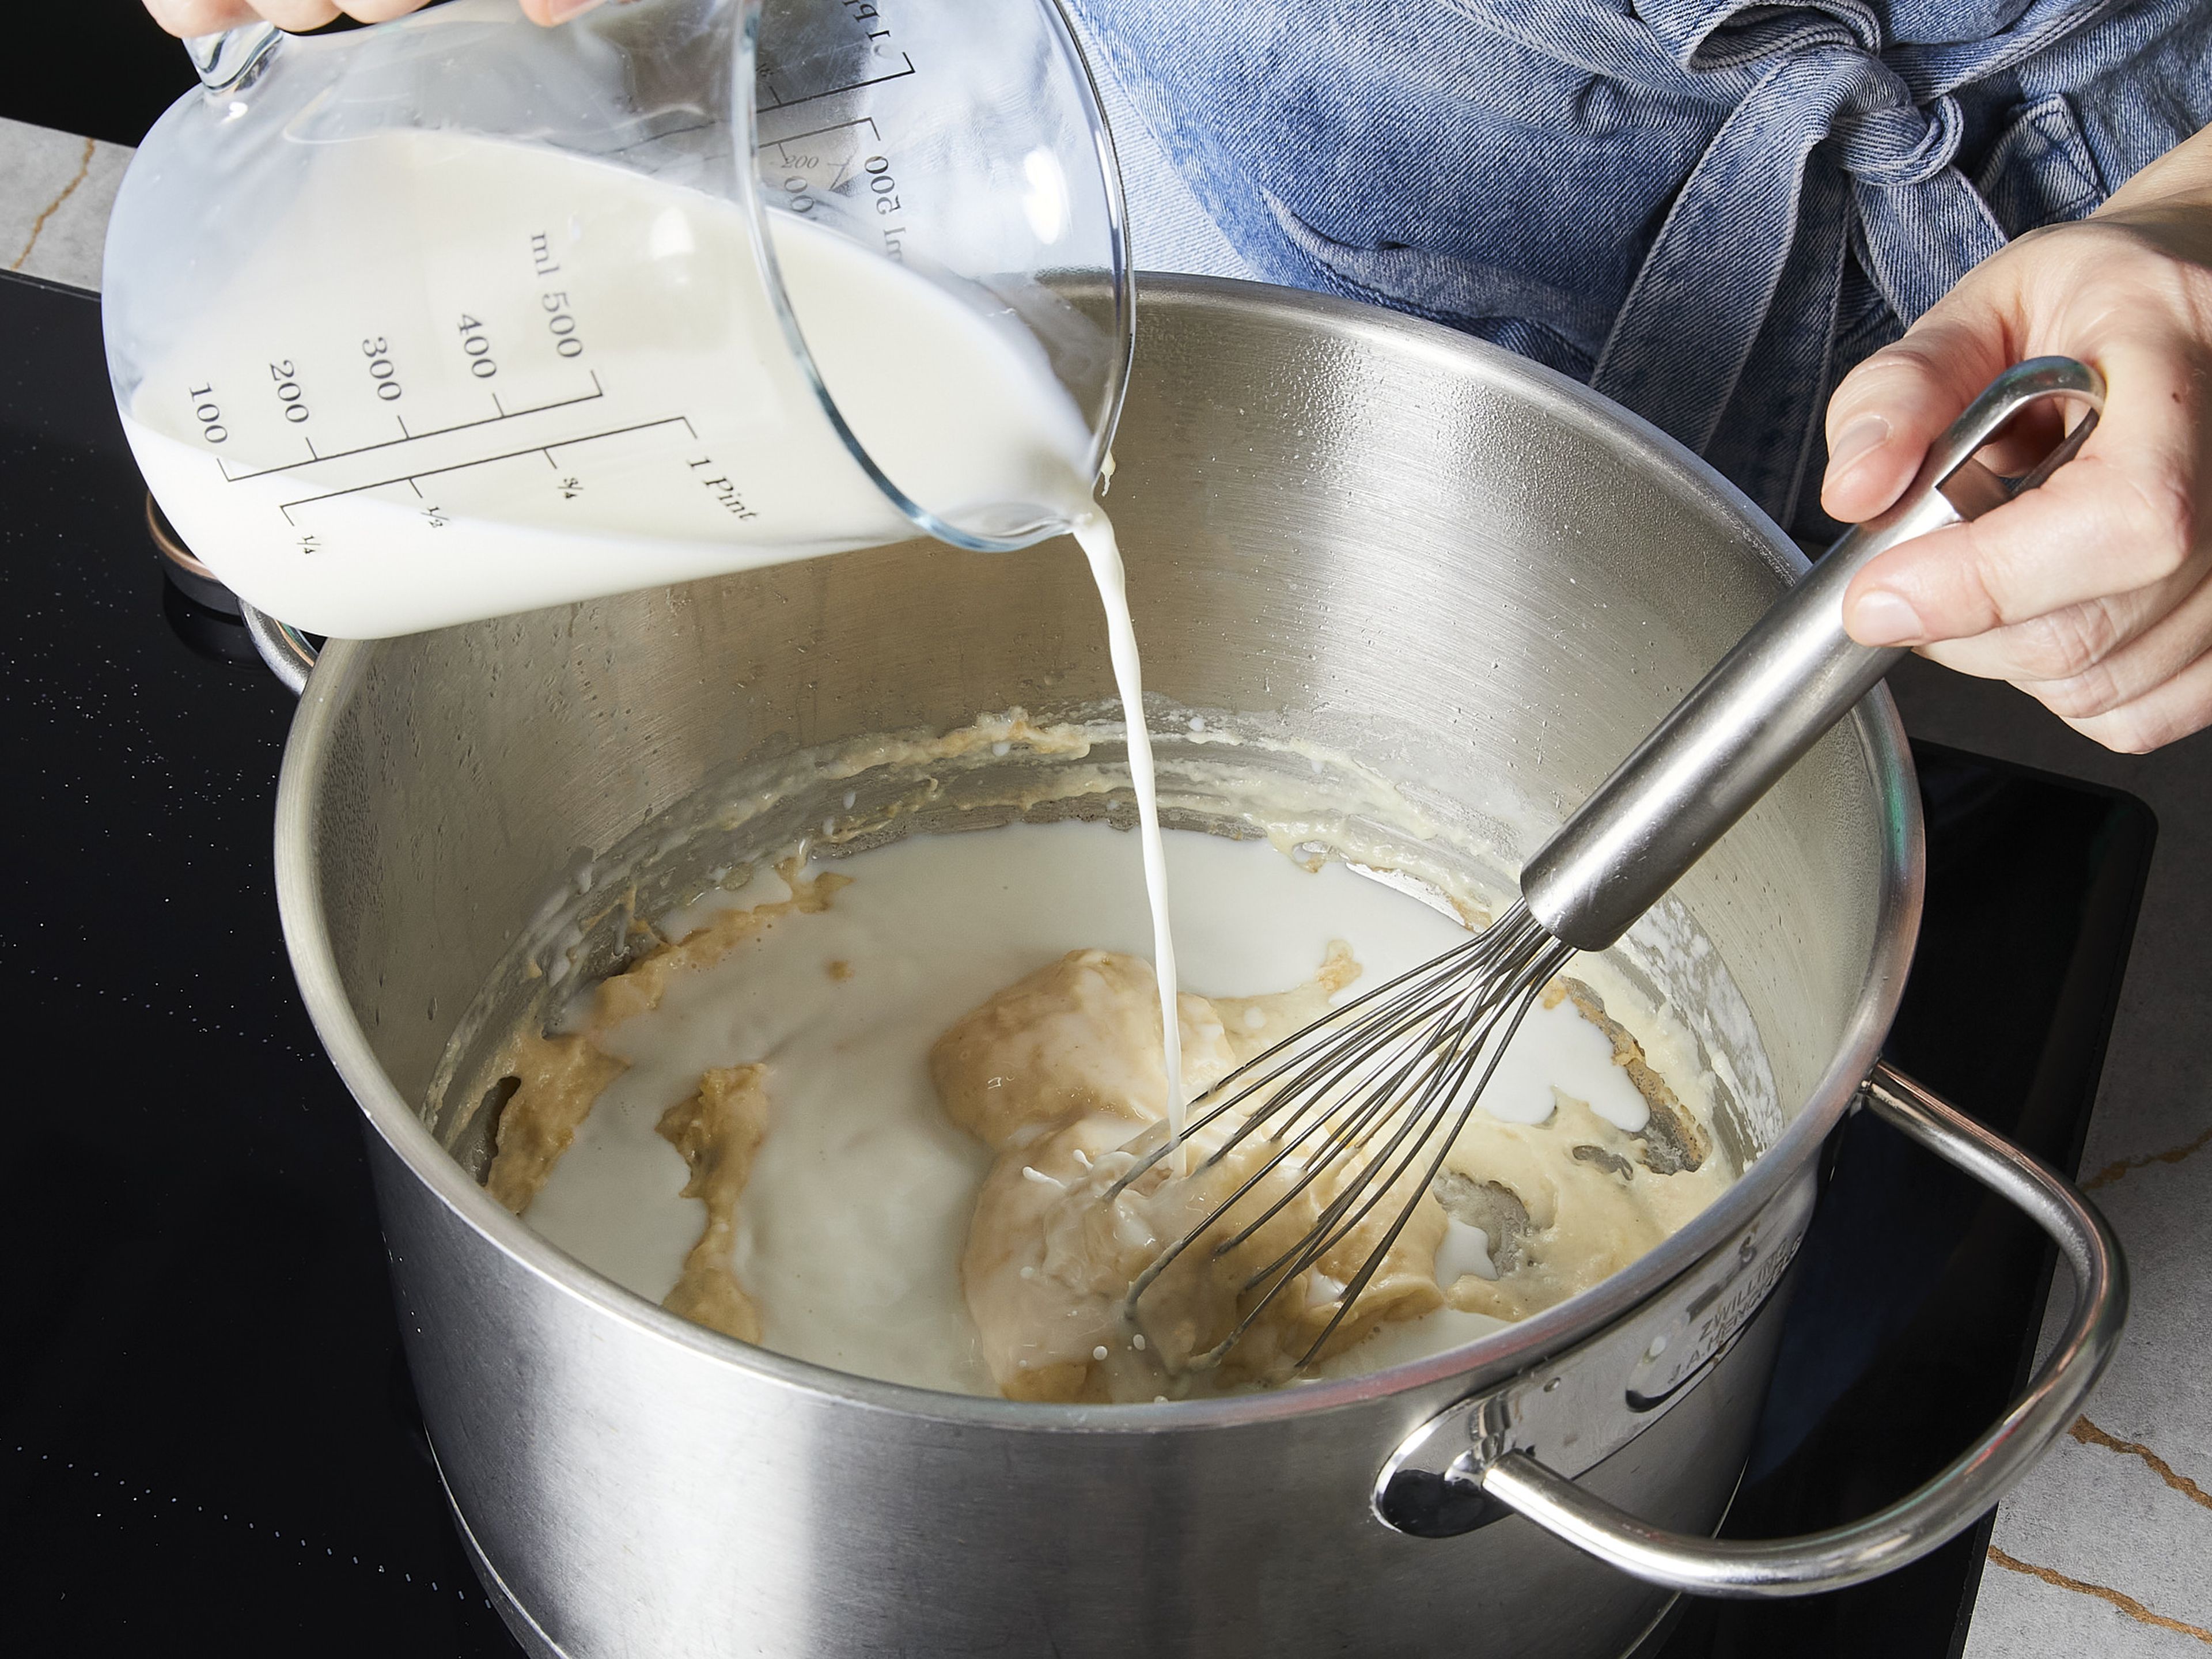 Den Cheddar-Käse mit einer Küchenmaschine oder Reibe zerkleinern und beiseitestellen. In einem großen Topf bei mittlerer Hitze die Butter zerlassen. Das Mehl einrühren und unter ständigem Rühren ca. 2 Min. kochen, bis die Mischung eingedickt ist und eine leicht goldene Farbe angenommen hat. Etwas Milch dazugeben und weiterrühren. Sobald die Mischung eingedickt ist, die restliche Milch und das Wasser hinzufügen und zum Kochen bringen.